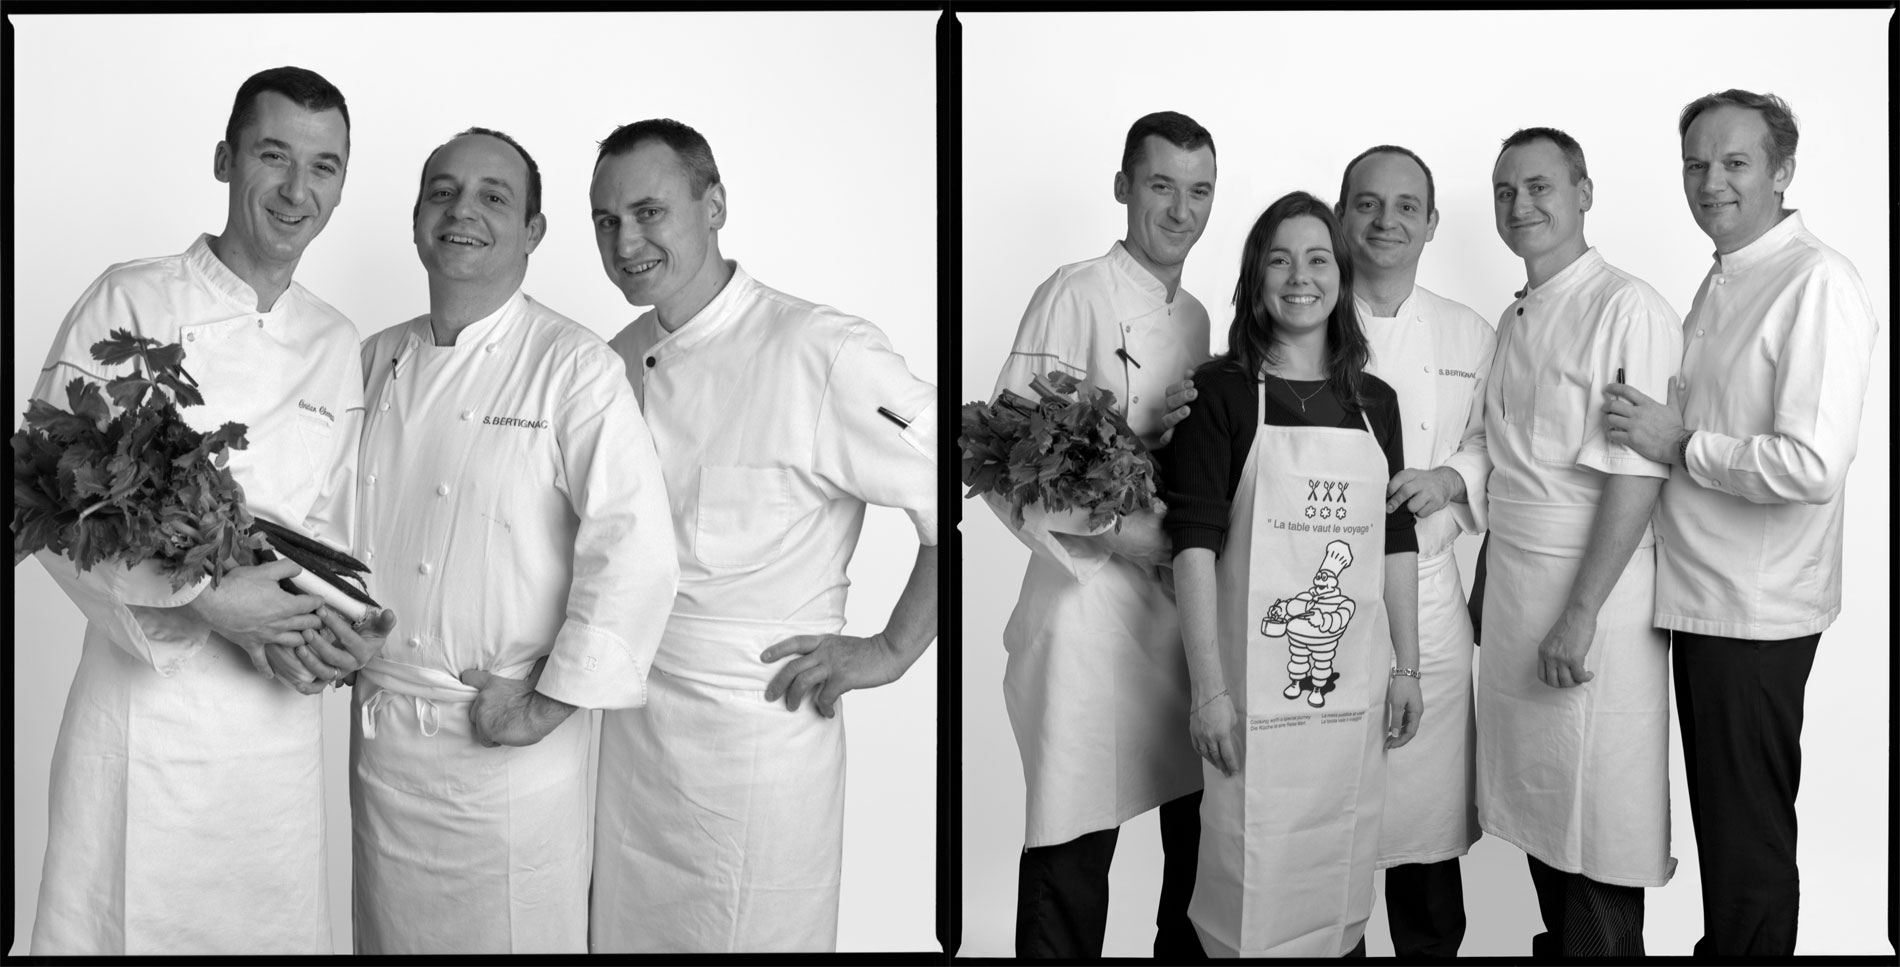 Christian, 1er sous chef - Sandra, assistante de direction - Stéphane, chef de cuisine - Fabrice, 2eme sous chef - Christian Le Squer, chef